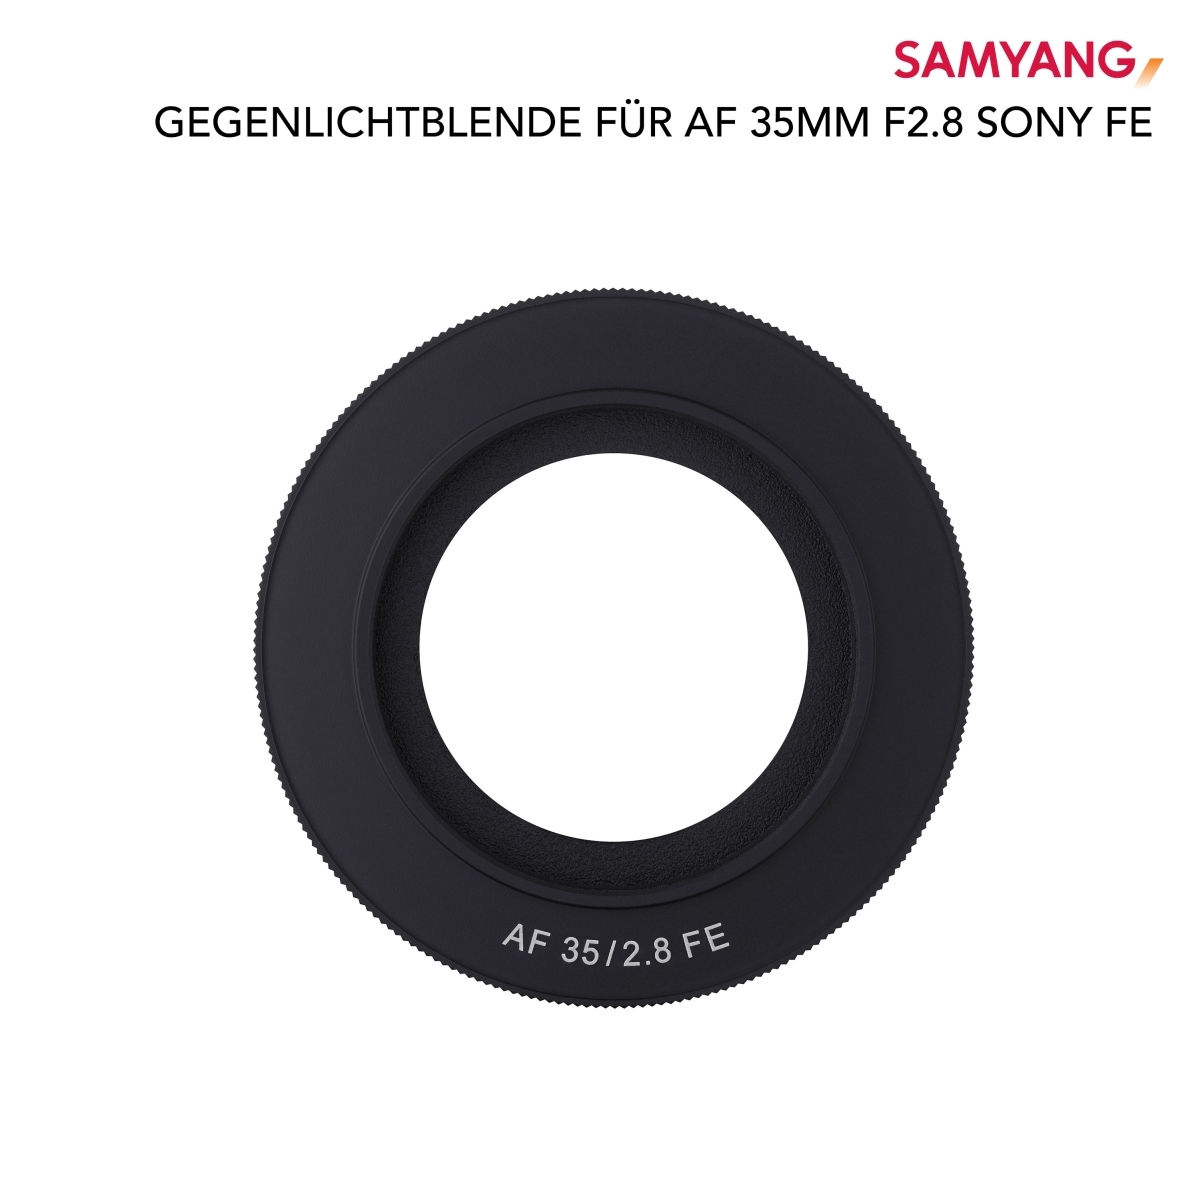 Paraluce Samyang per AF 35mm F2.8 Sony FE